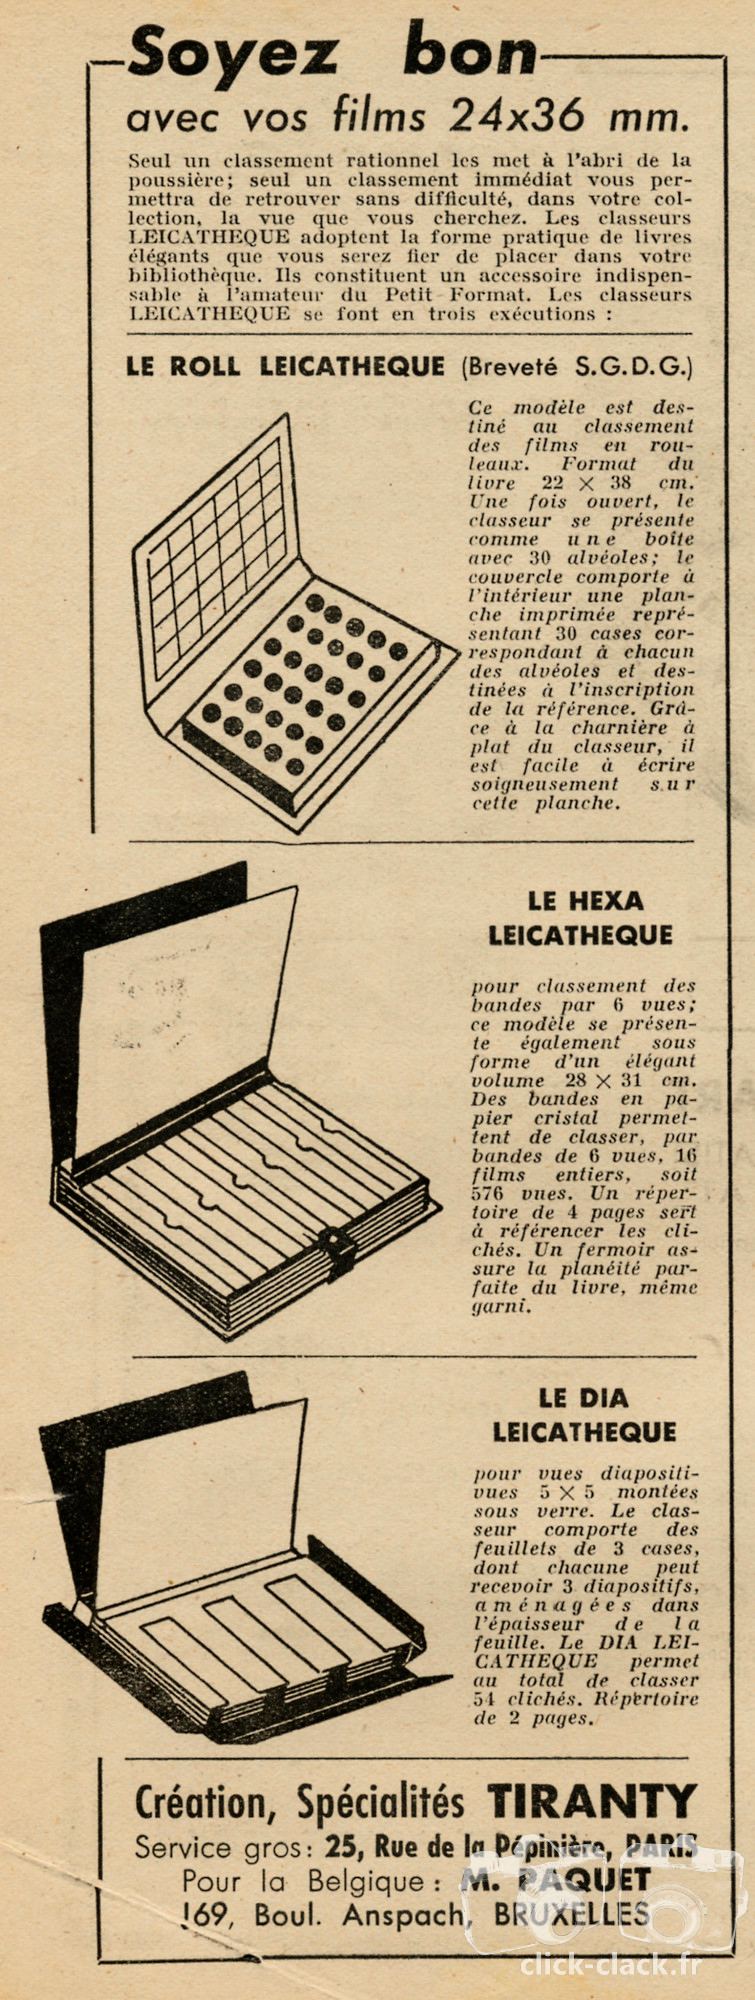 Tiranty - Roll Leicathèque, Hexa Leicathèque, Dia Leicathèque - 1946